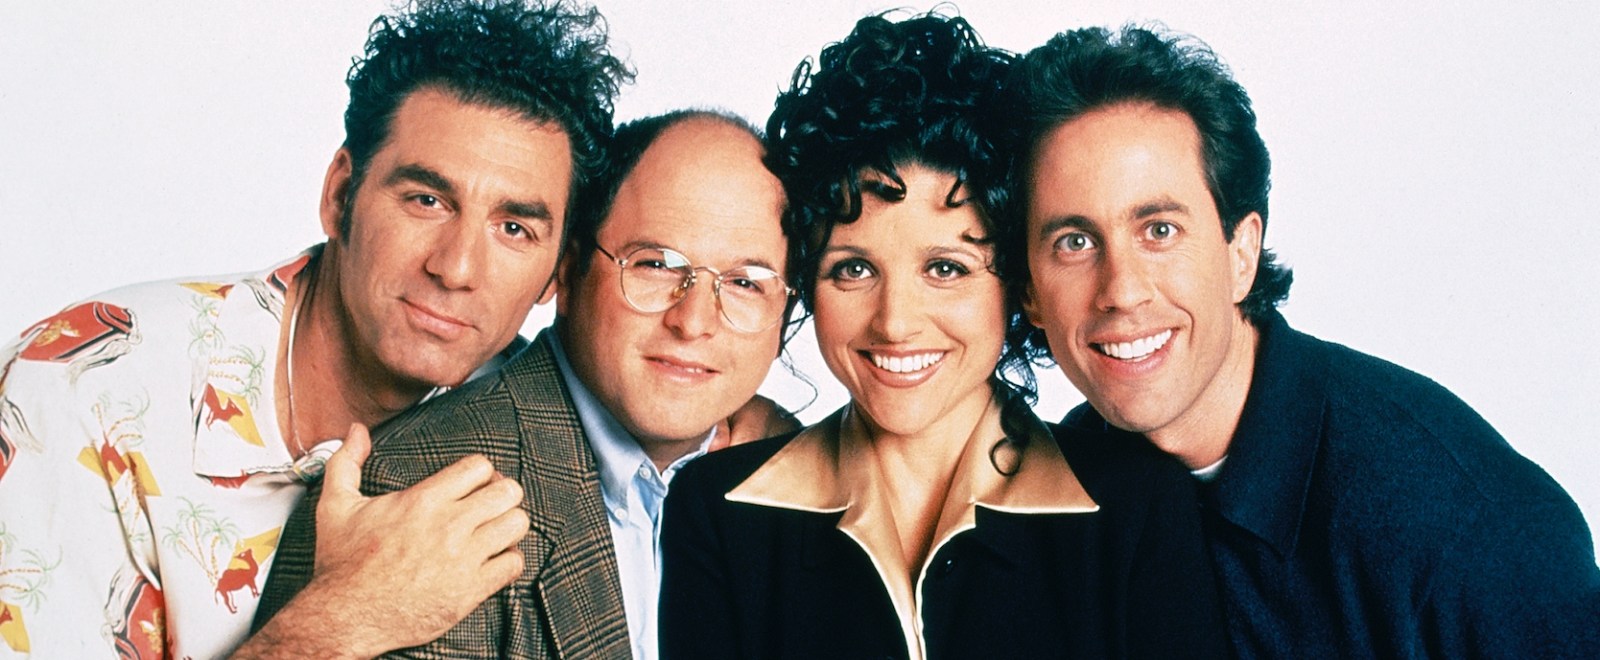 20 Best 'Seinfeld' Episodes, Ranked